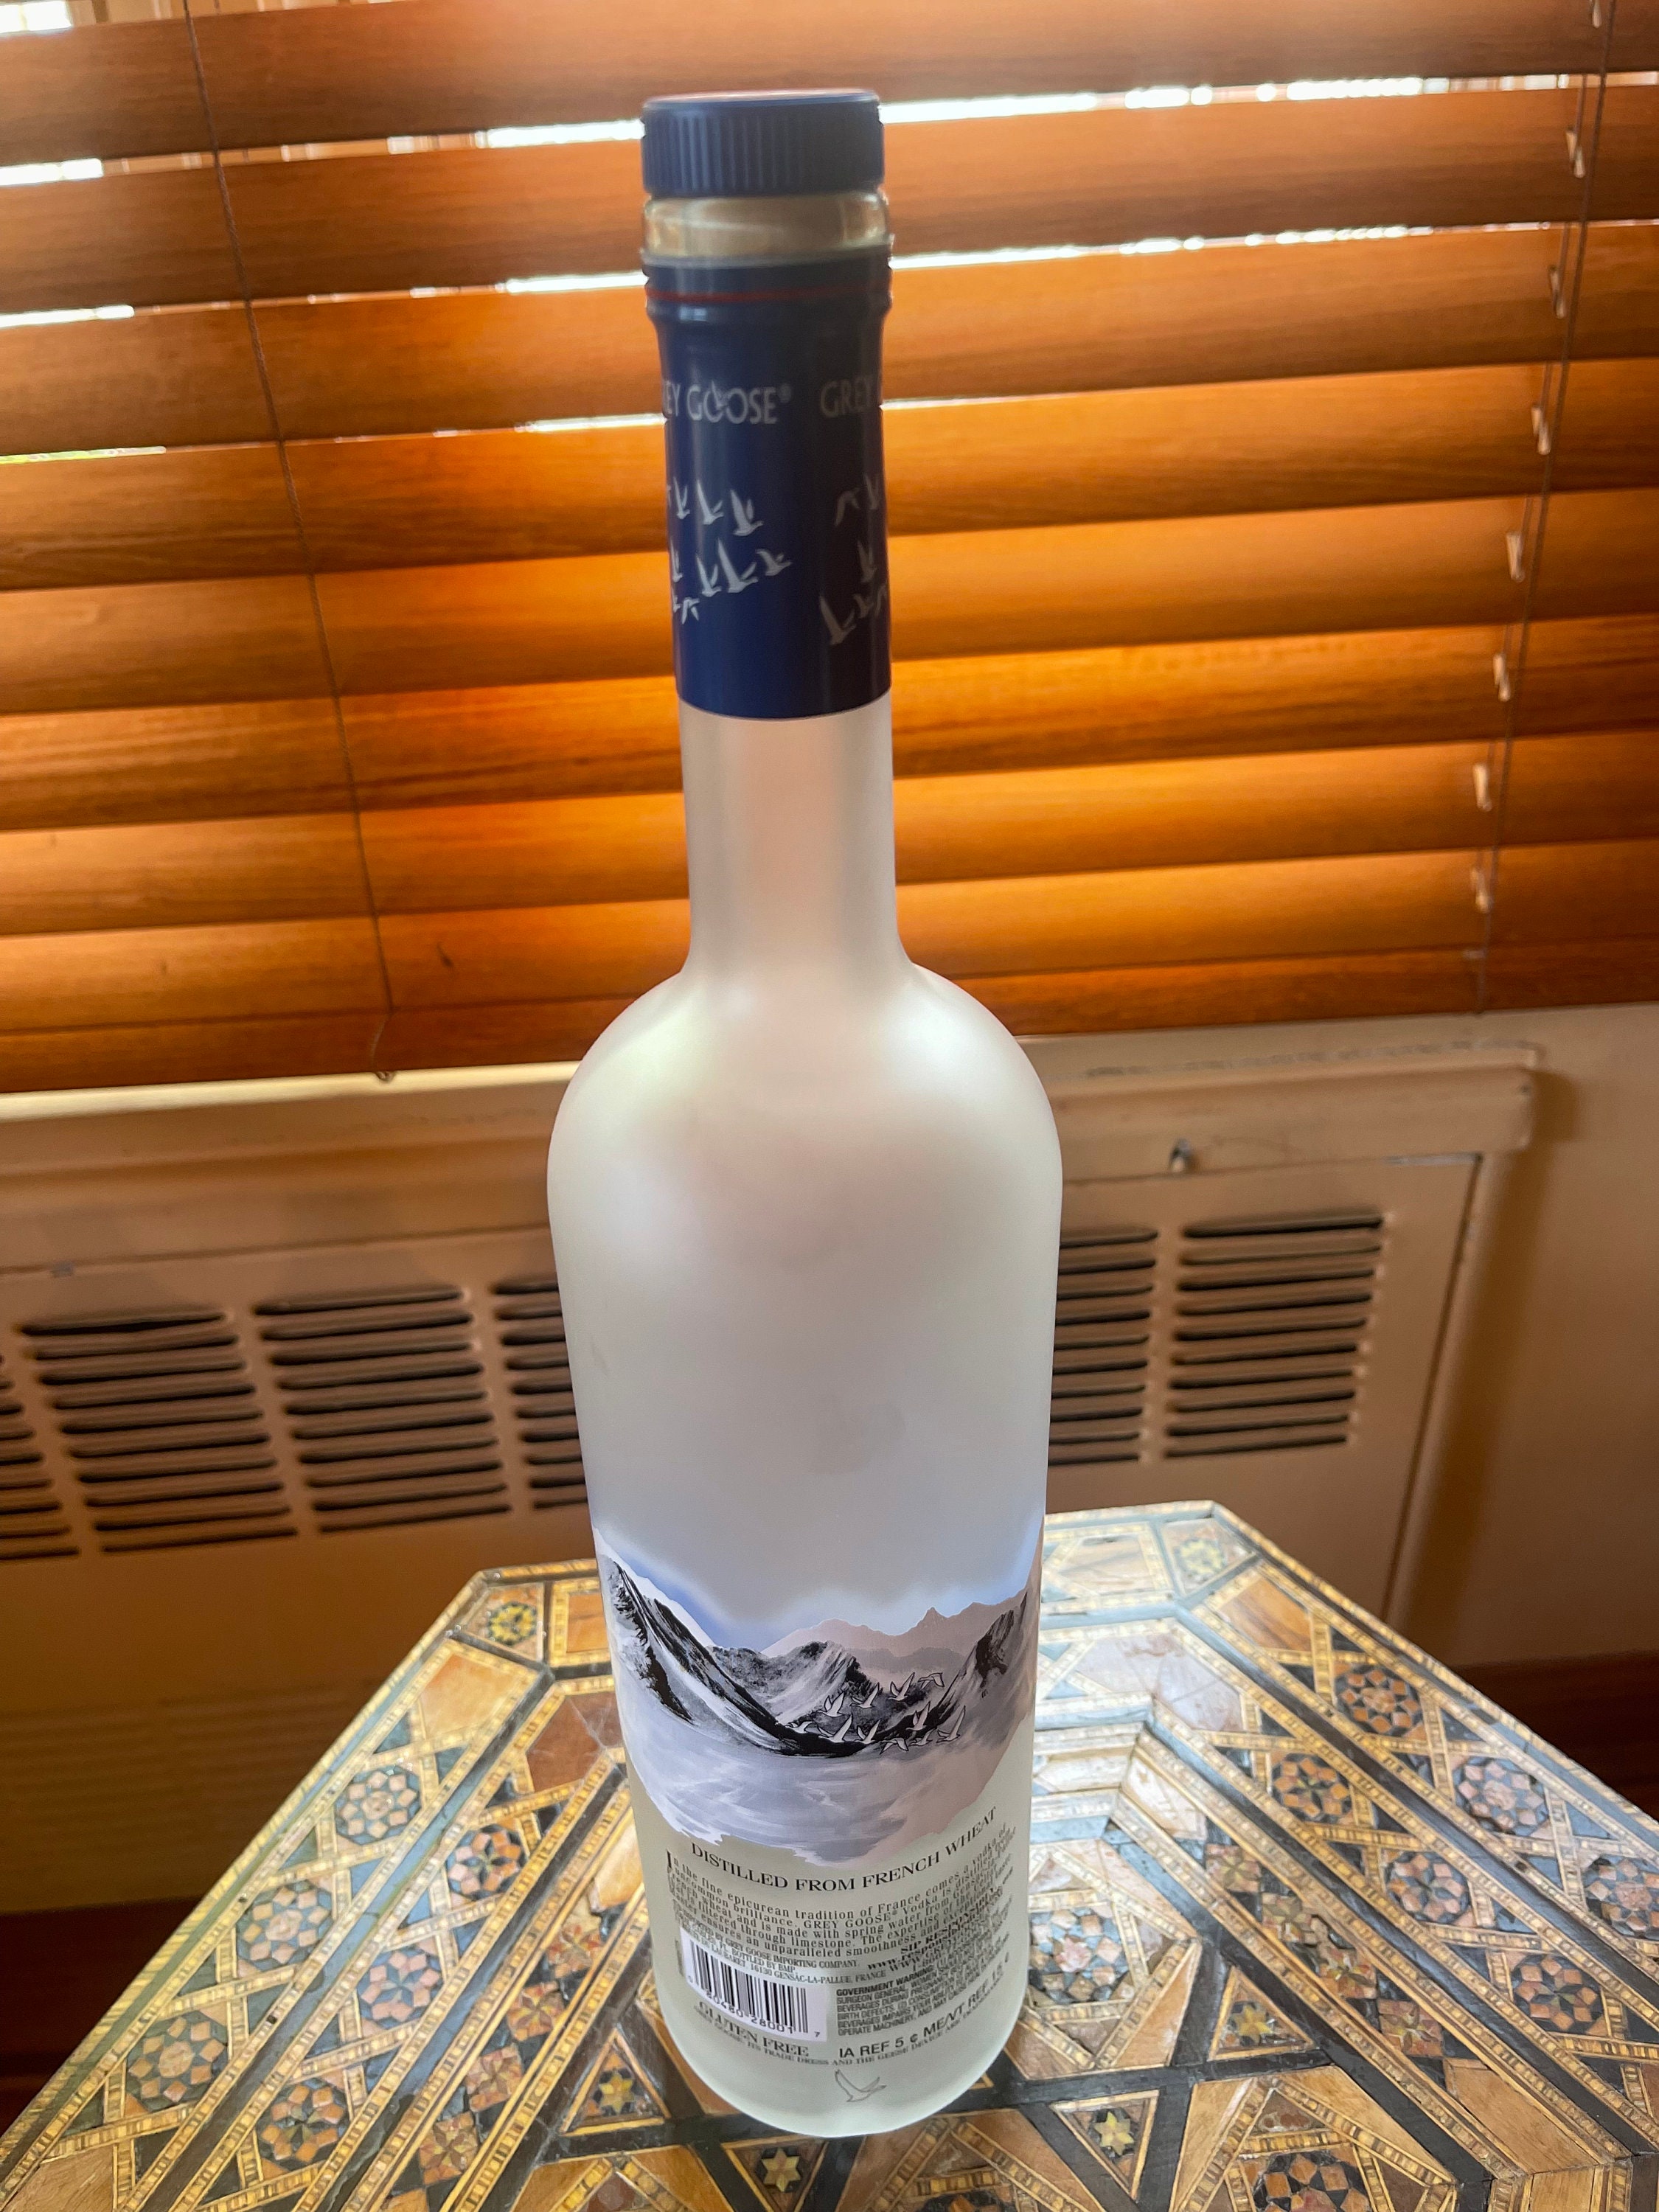 Vodka Grey Goose Bouteille vide de 1 litre pour l'artisanat et la  décoration. -  France